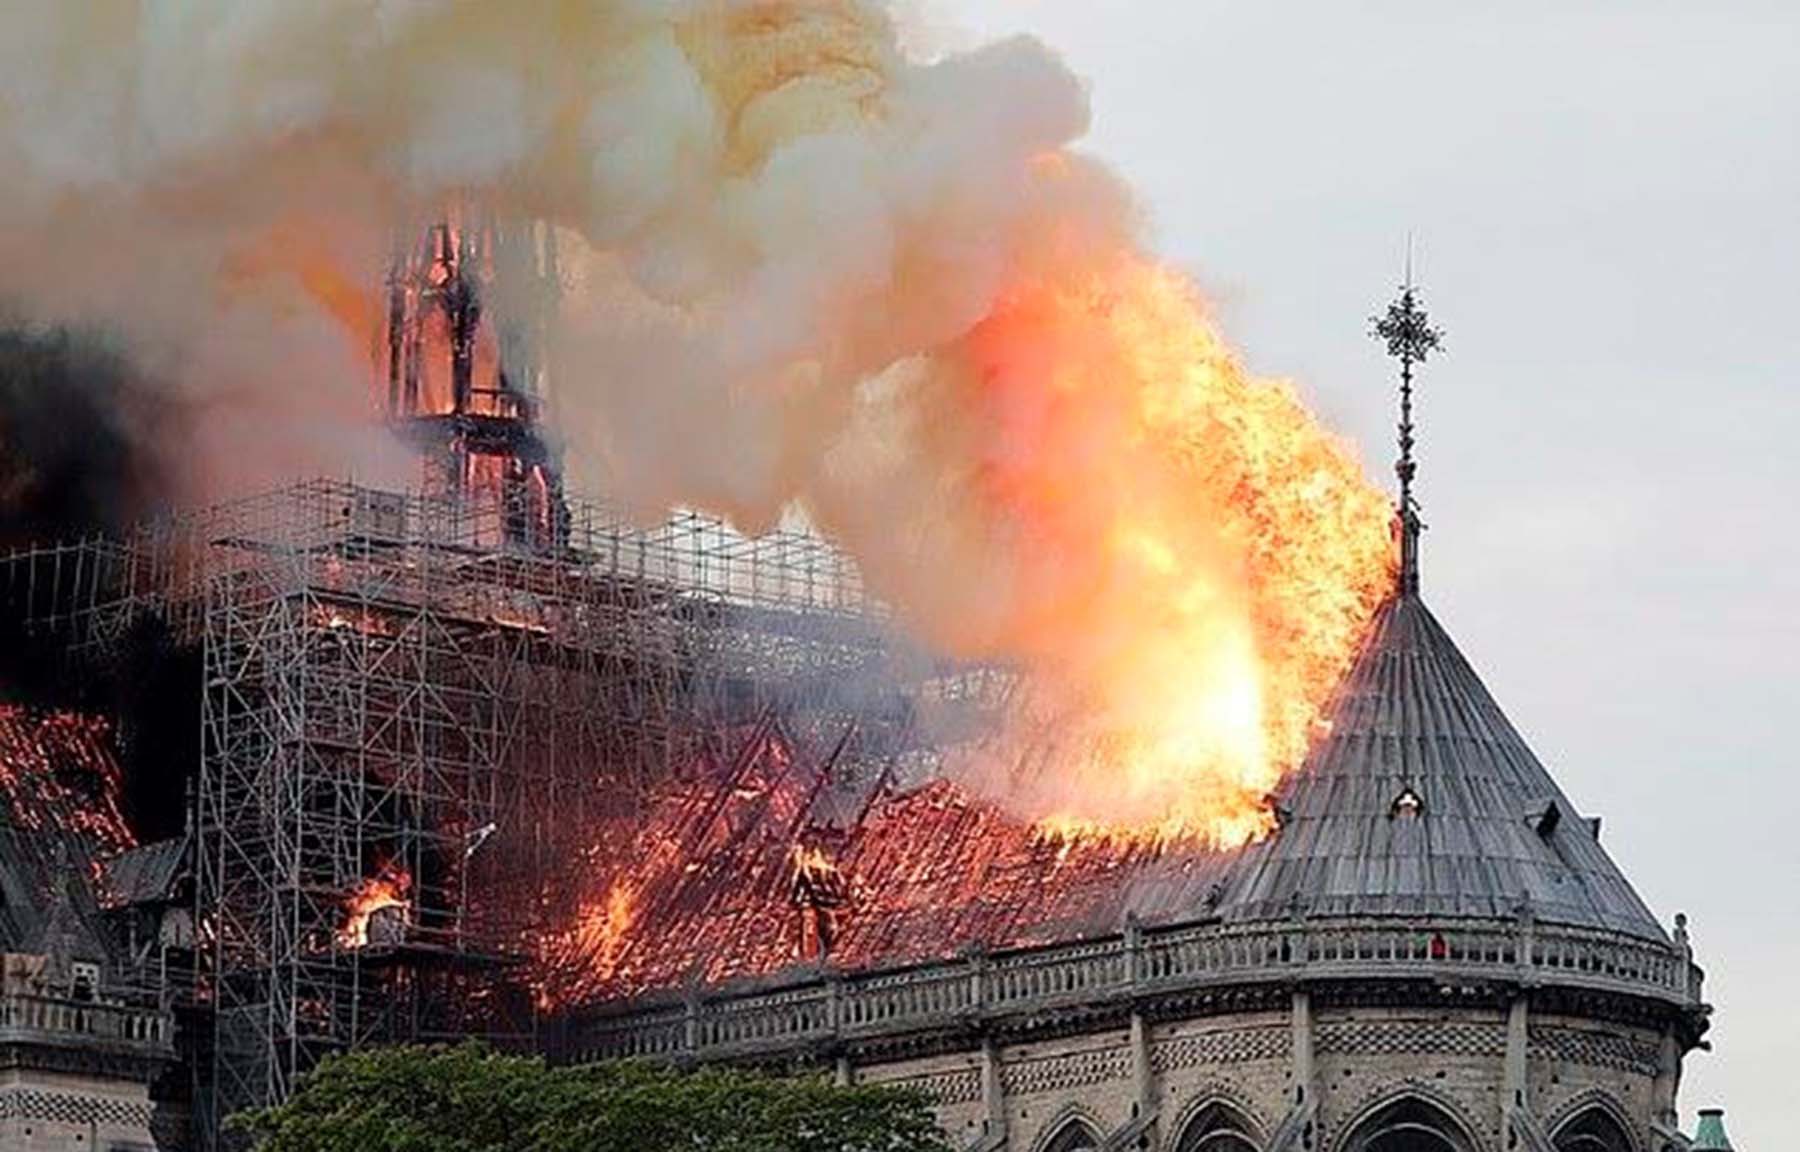 Ngọn lửa đã tàn phá tháp chuông của nhà thờ. (Nguồn: Daily Mail)